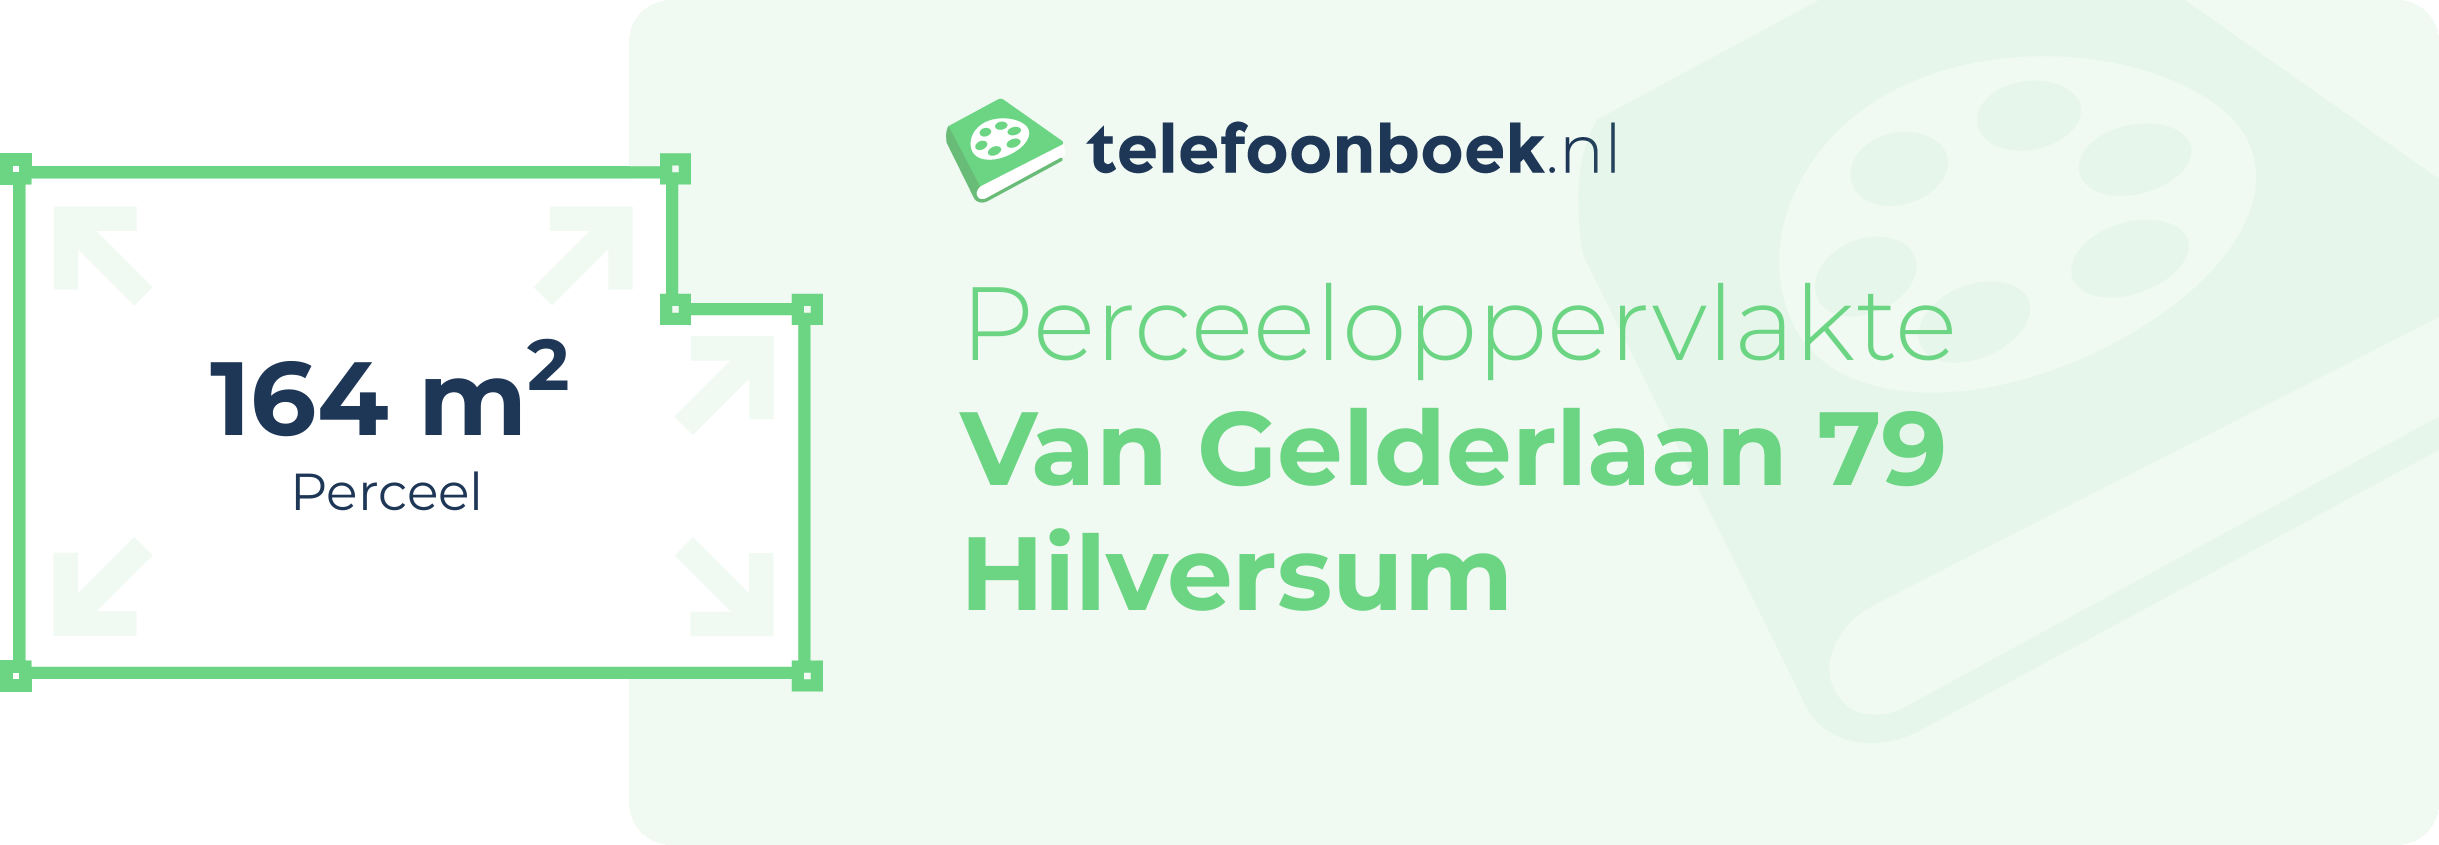 Perceeloppervlakte Van Gelderlaan 79 Hilversum